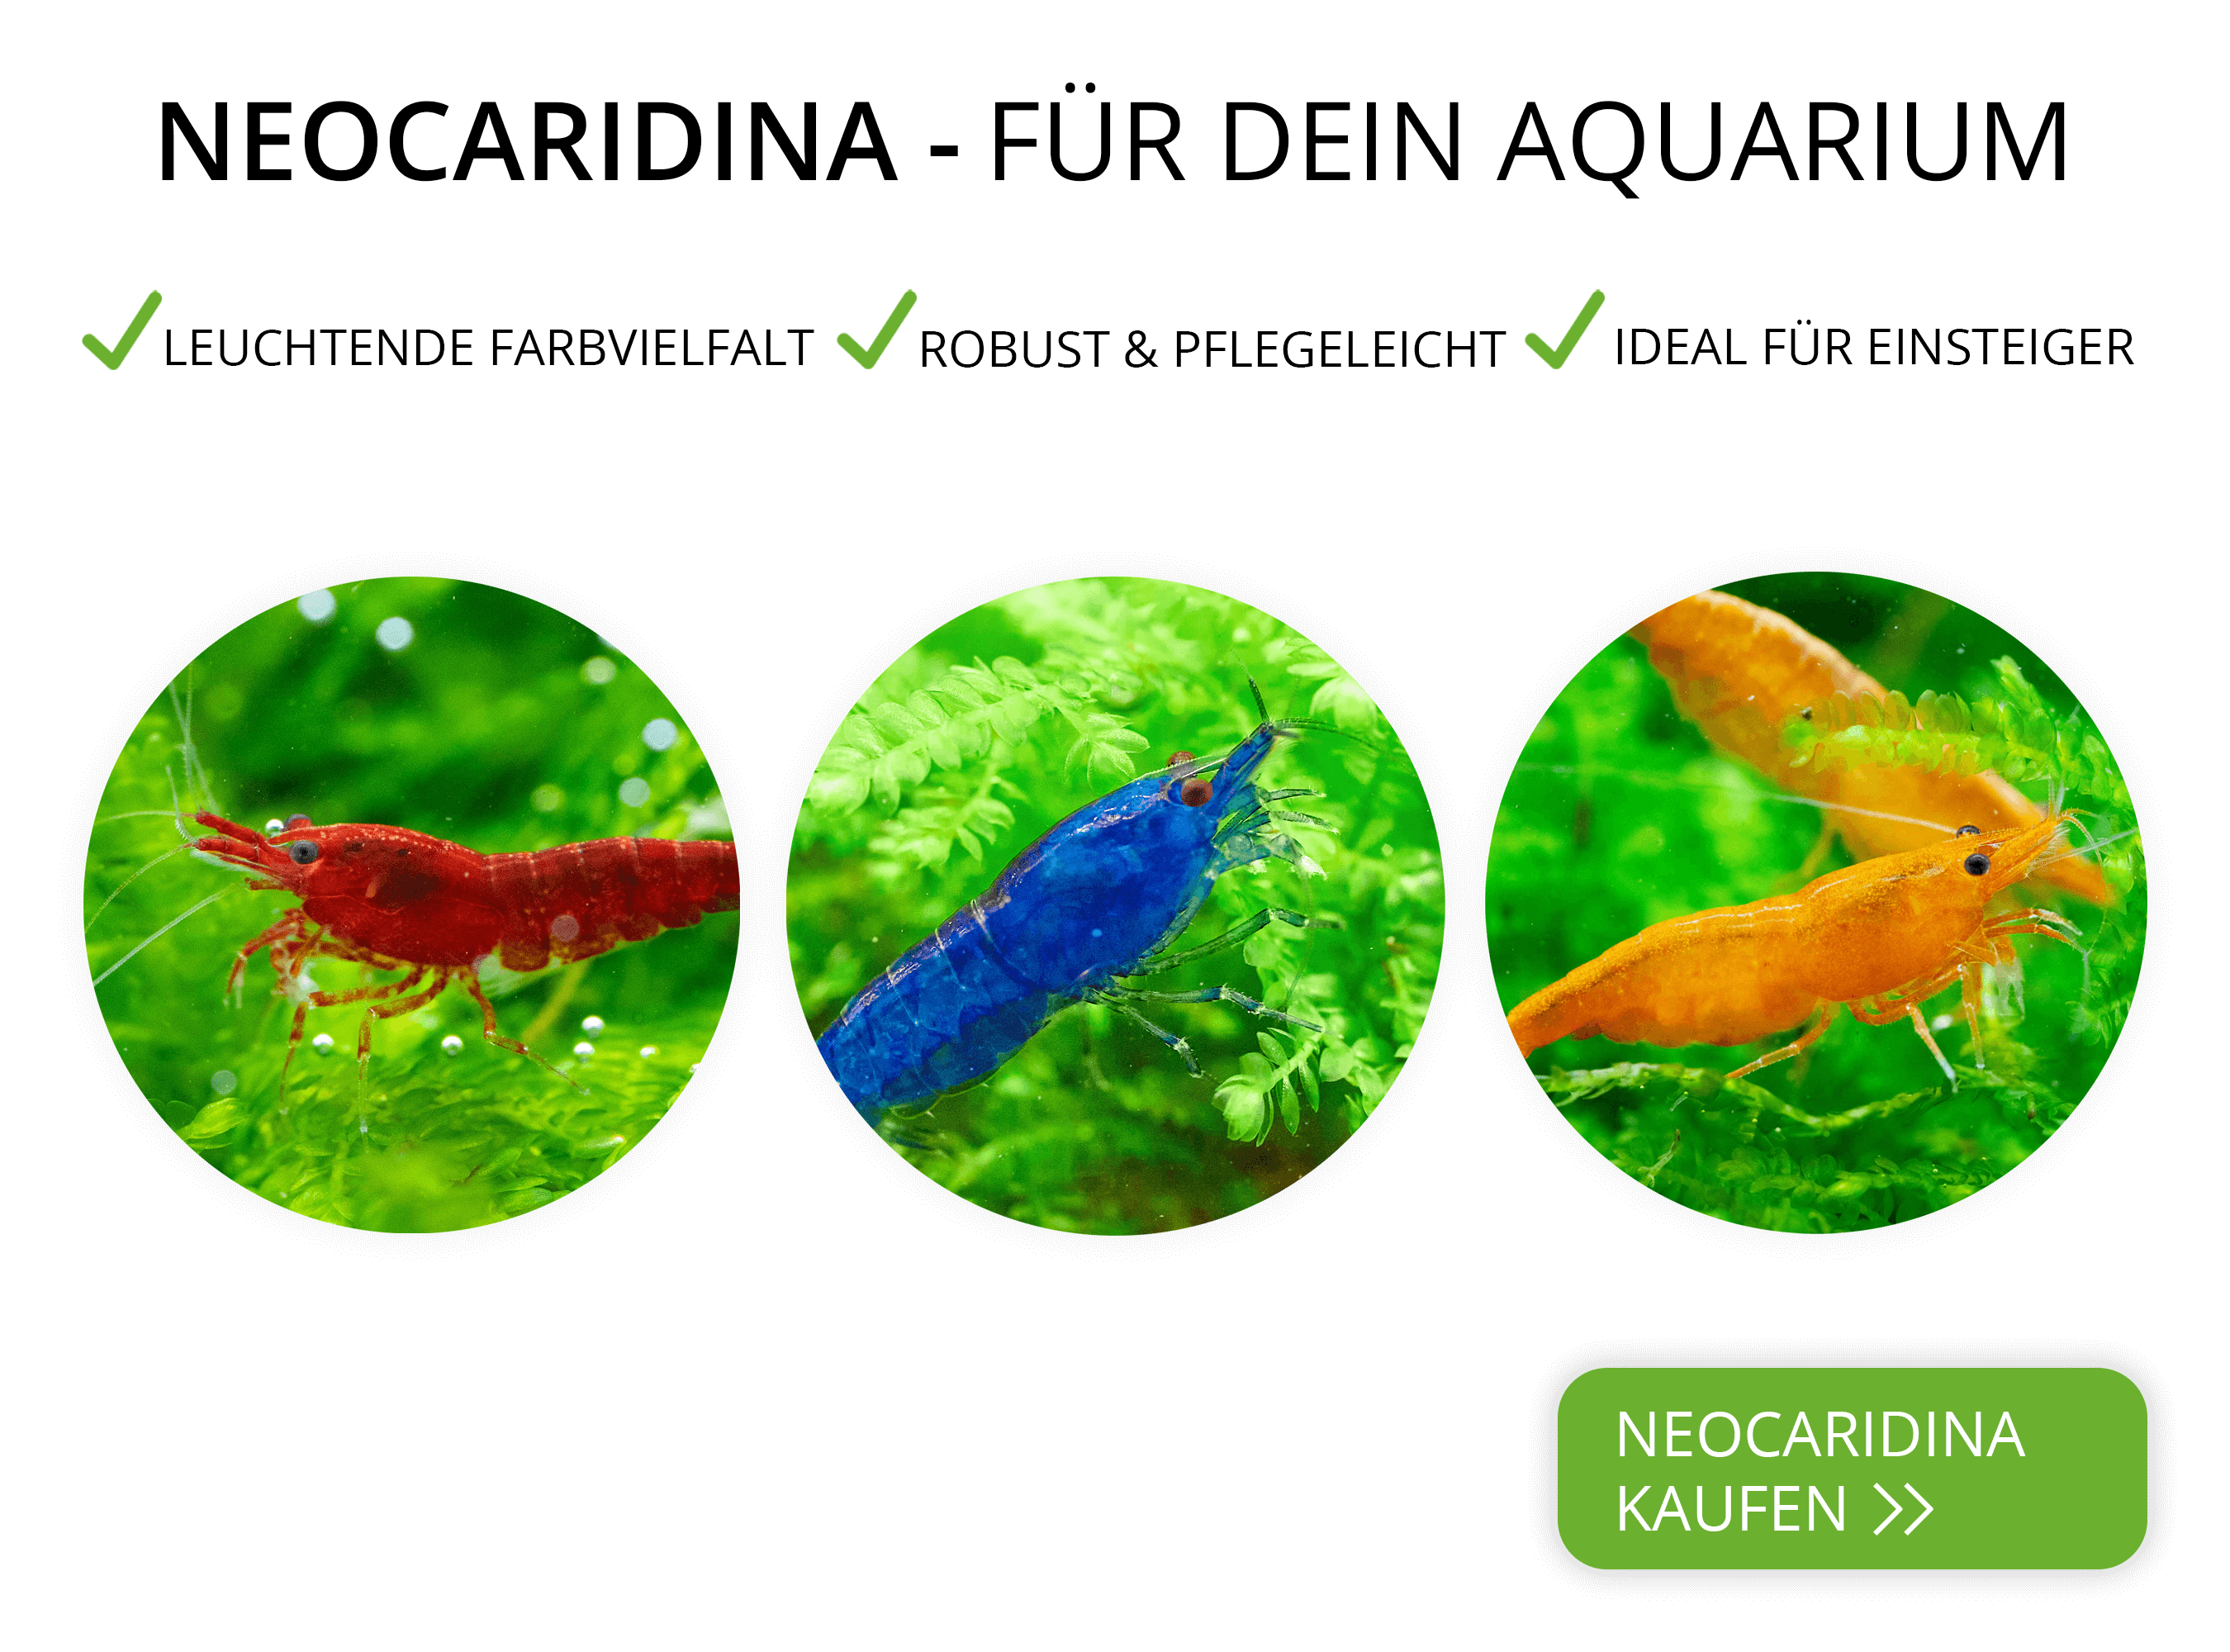 Neocaridina Garnelen für dein Aquarium kaufen